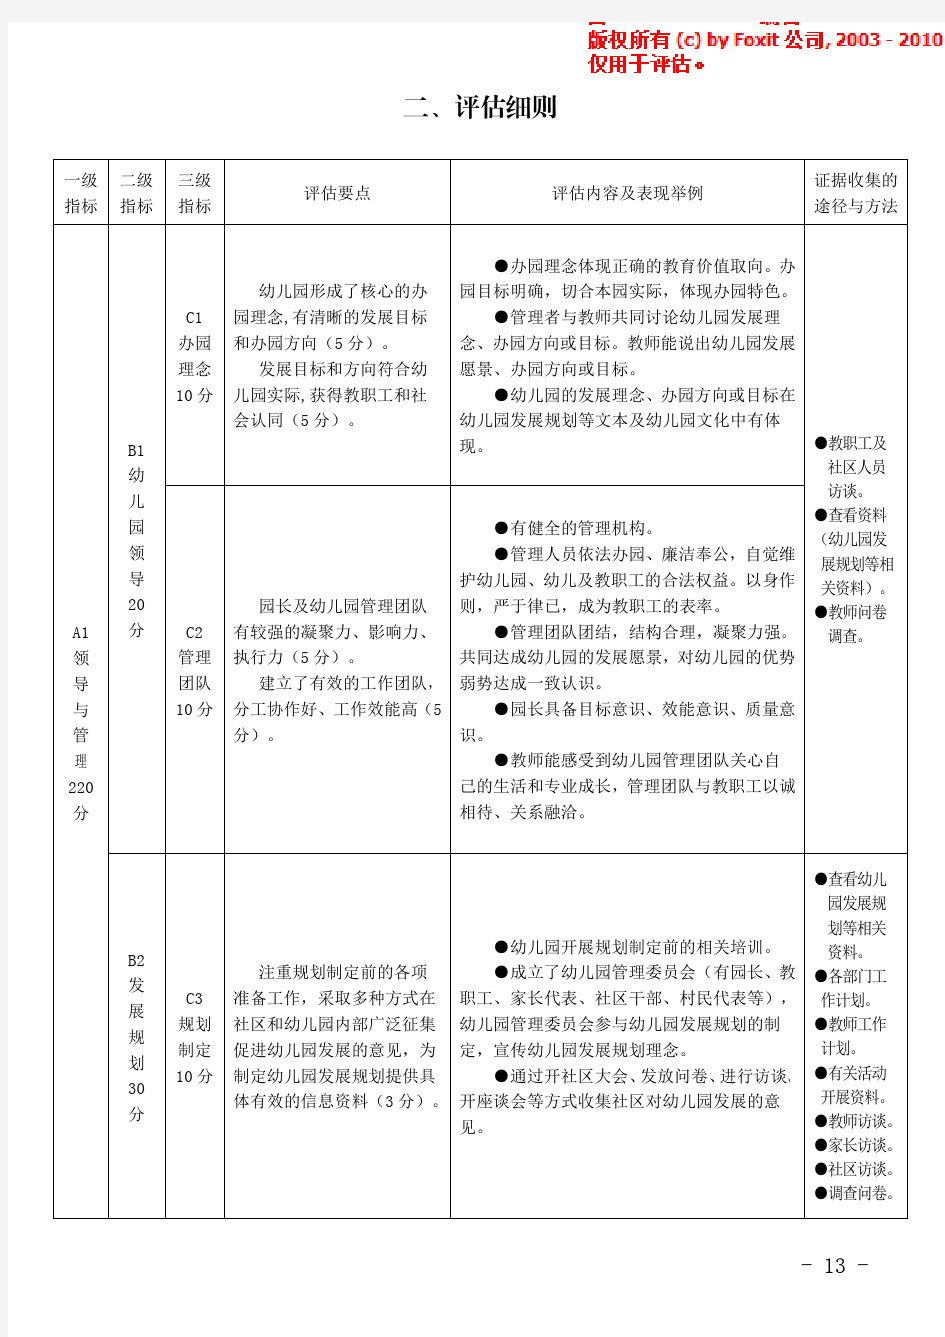 贵州省省级示范幼儿园评估方案(试行)  7月18日  终稿 (2)